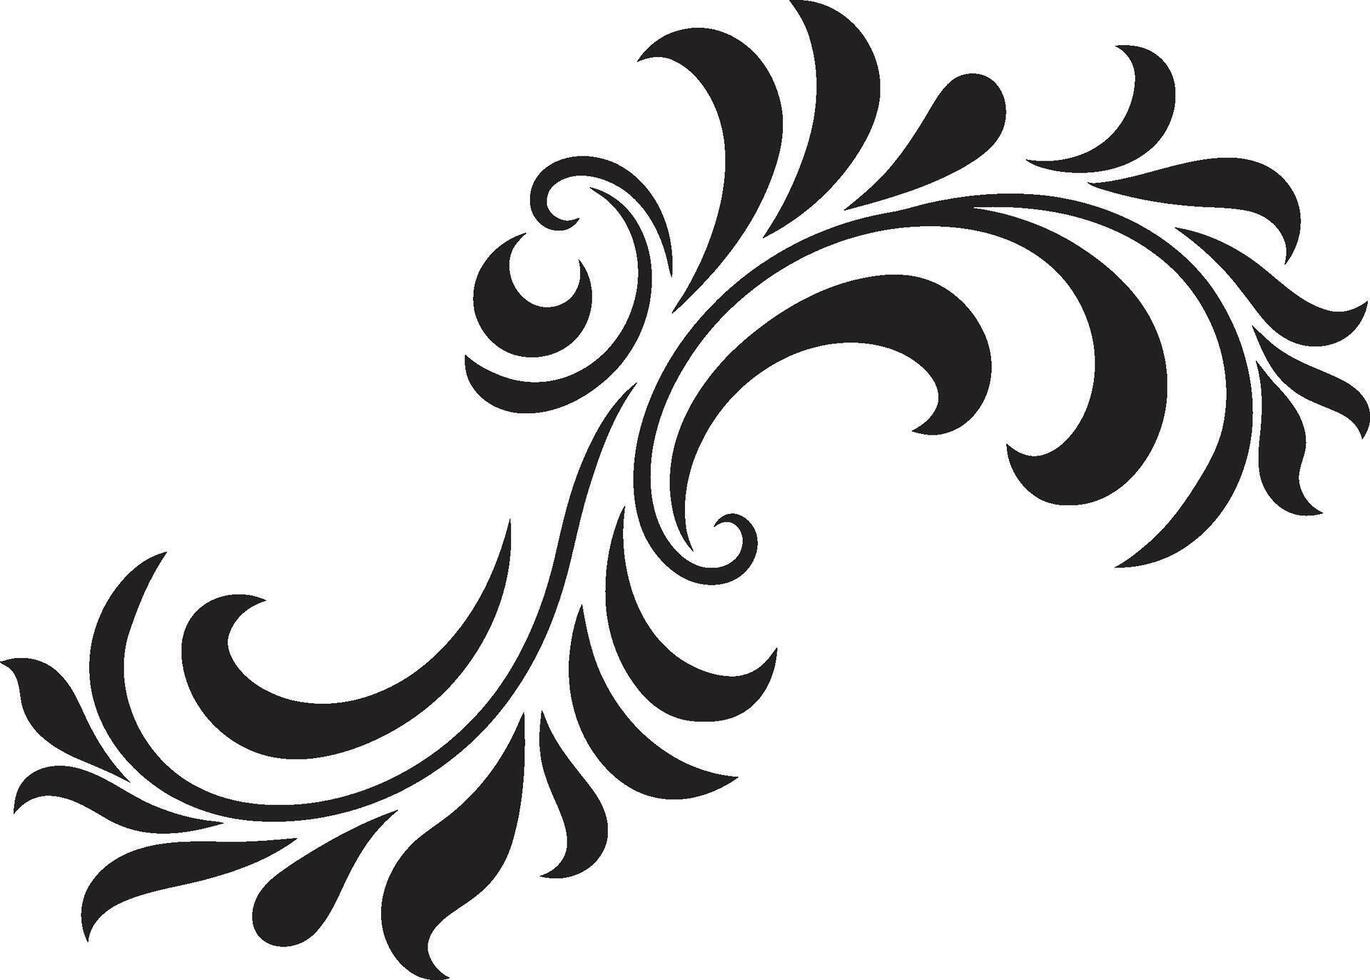 oud verleiden monochroom embleem markeren Europese grens ontwerp retro vorstelijkheid elegant zwart logo met wijnoogst Europese grens vector